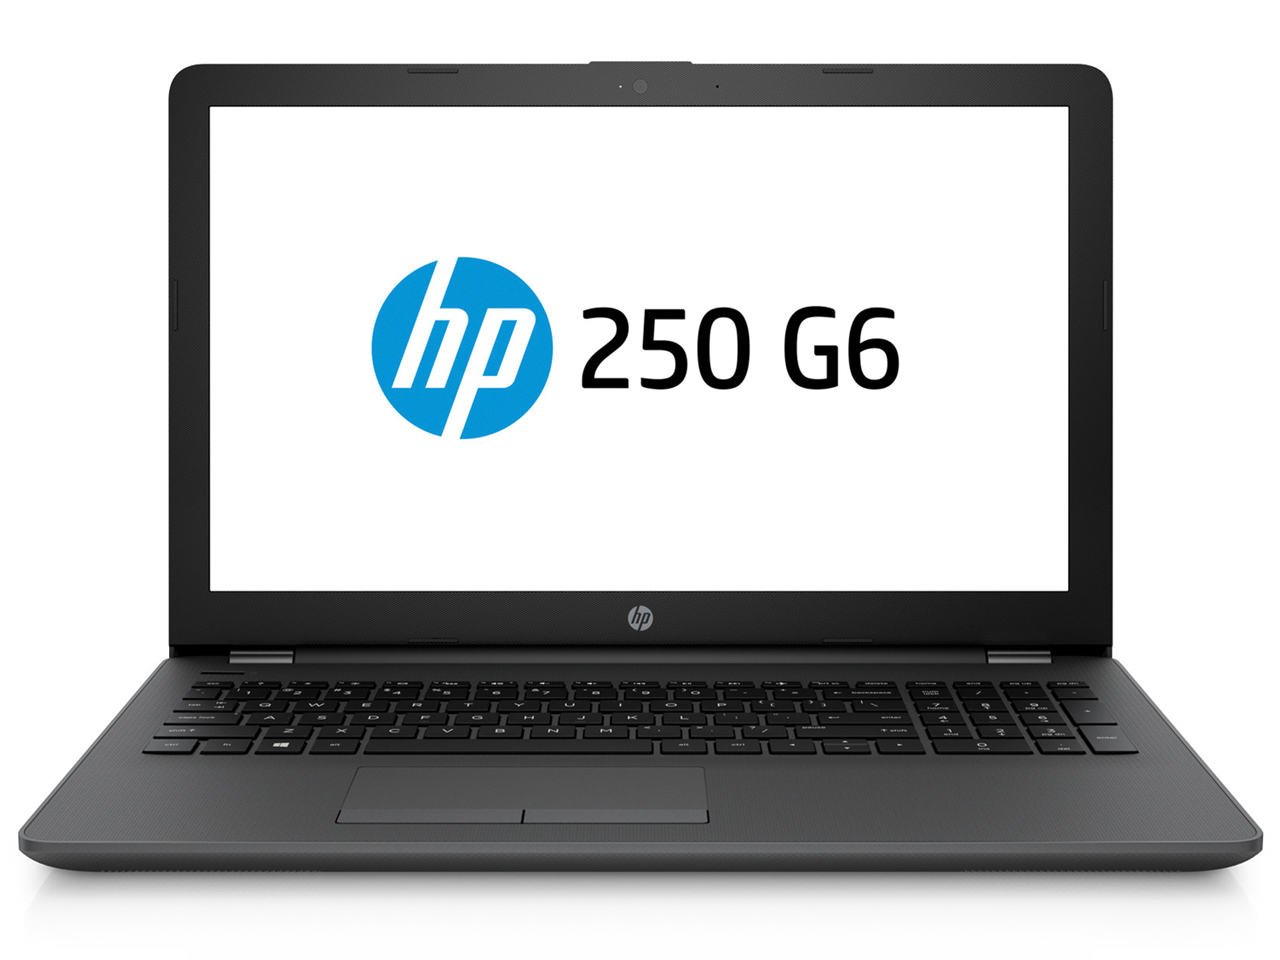 価格.com - HP 250 G6 Notebook PC Core i5/8GBメモリ/256GB SSD/フルHD/DVDライター